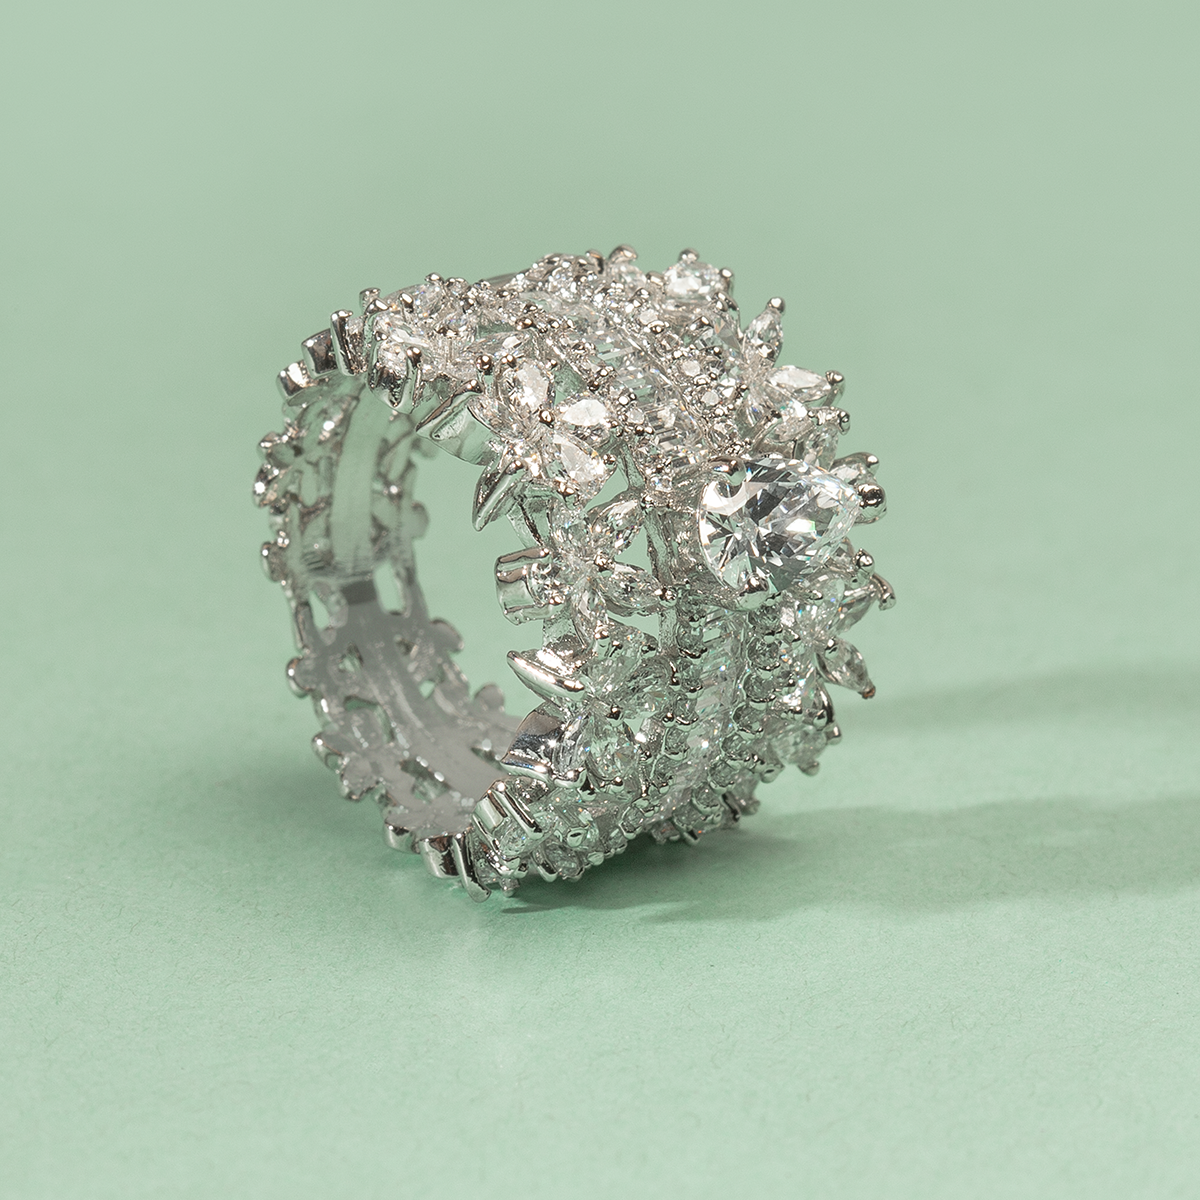 Mishka Emerald Cut Swarovski Zirconia Silver Ring